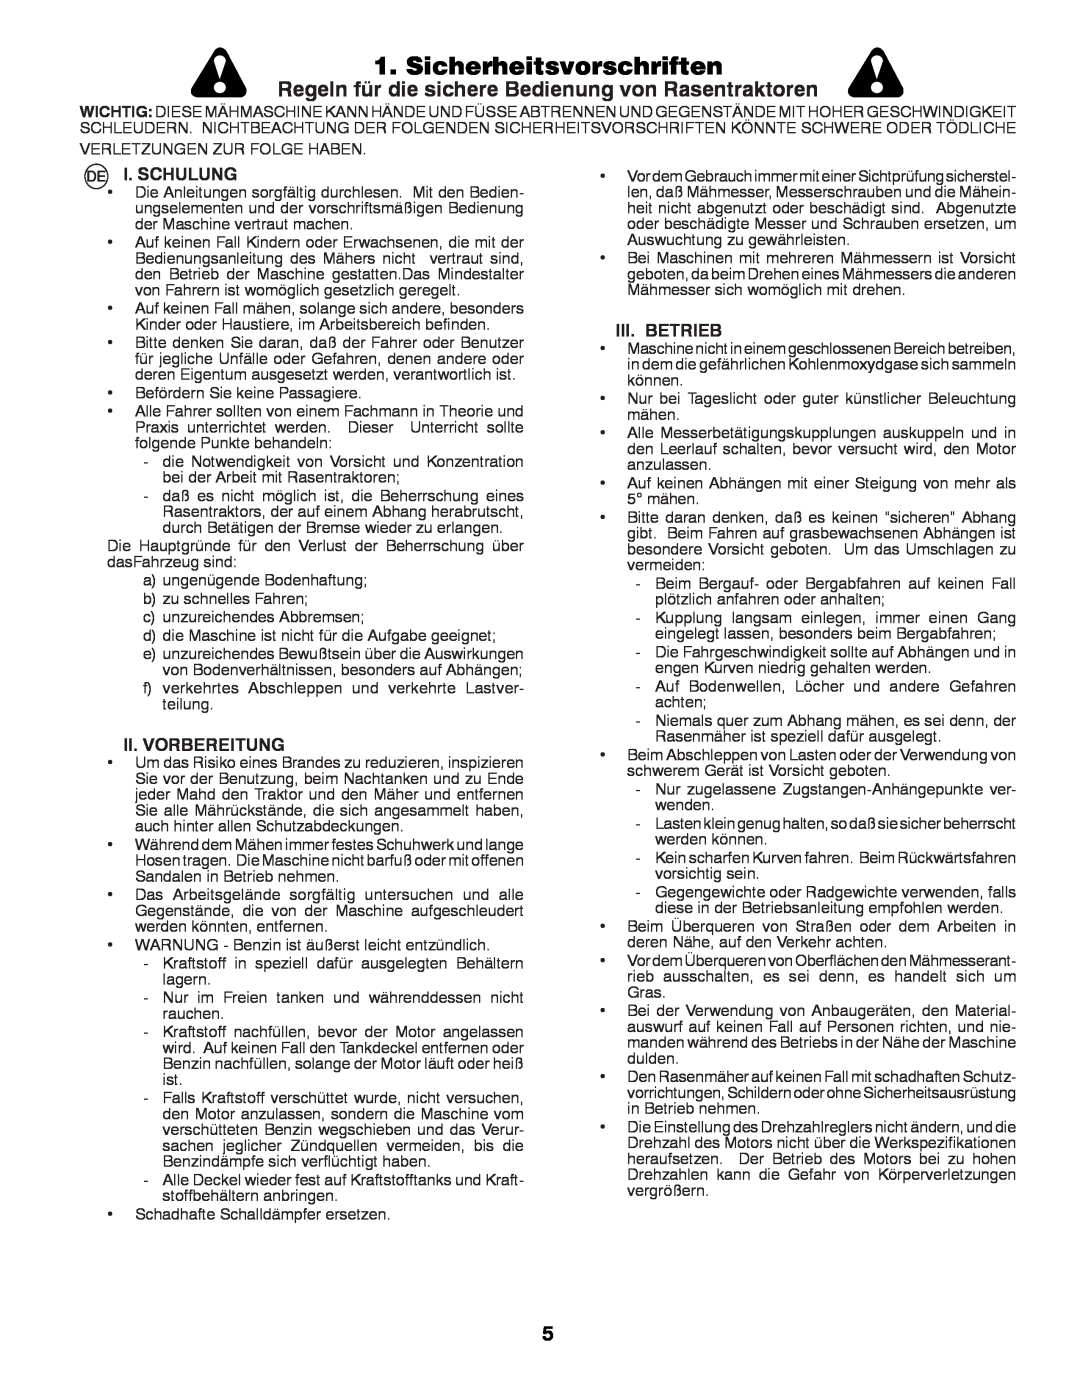 Husqvarna CTH180 TWIN Sicherheitsvorschriften, Regeln für die sichere Bedienung von Rasentraktoren, I. Schulung 